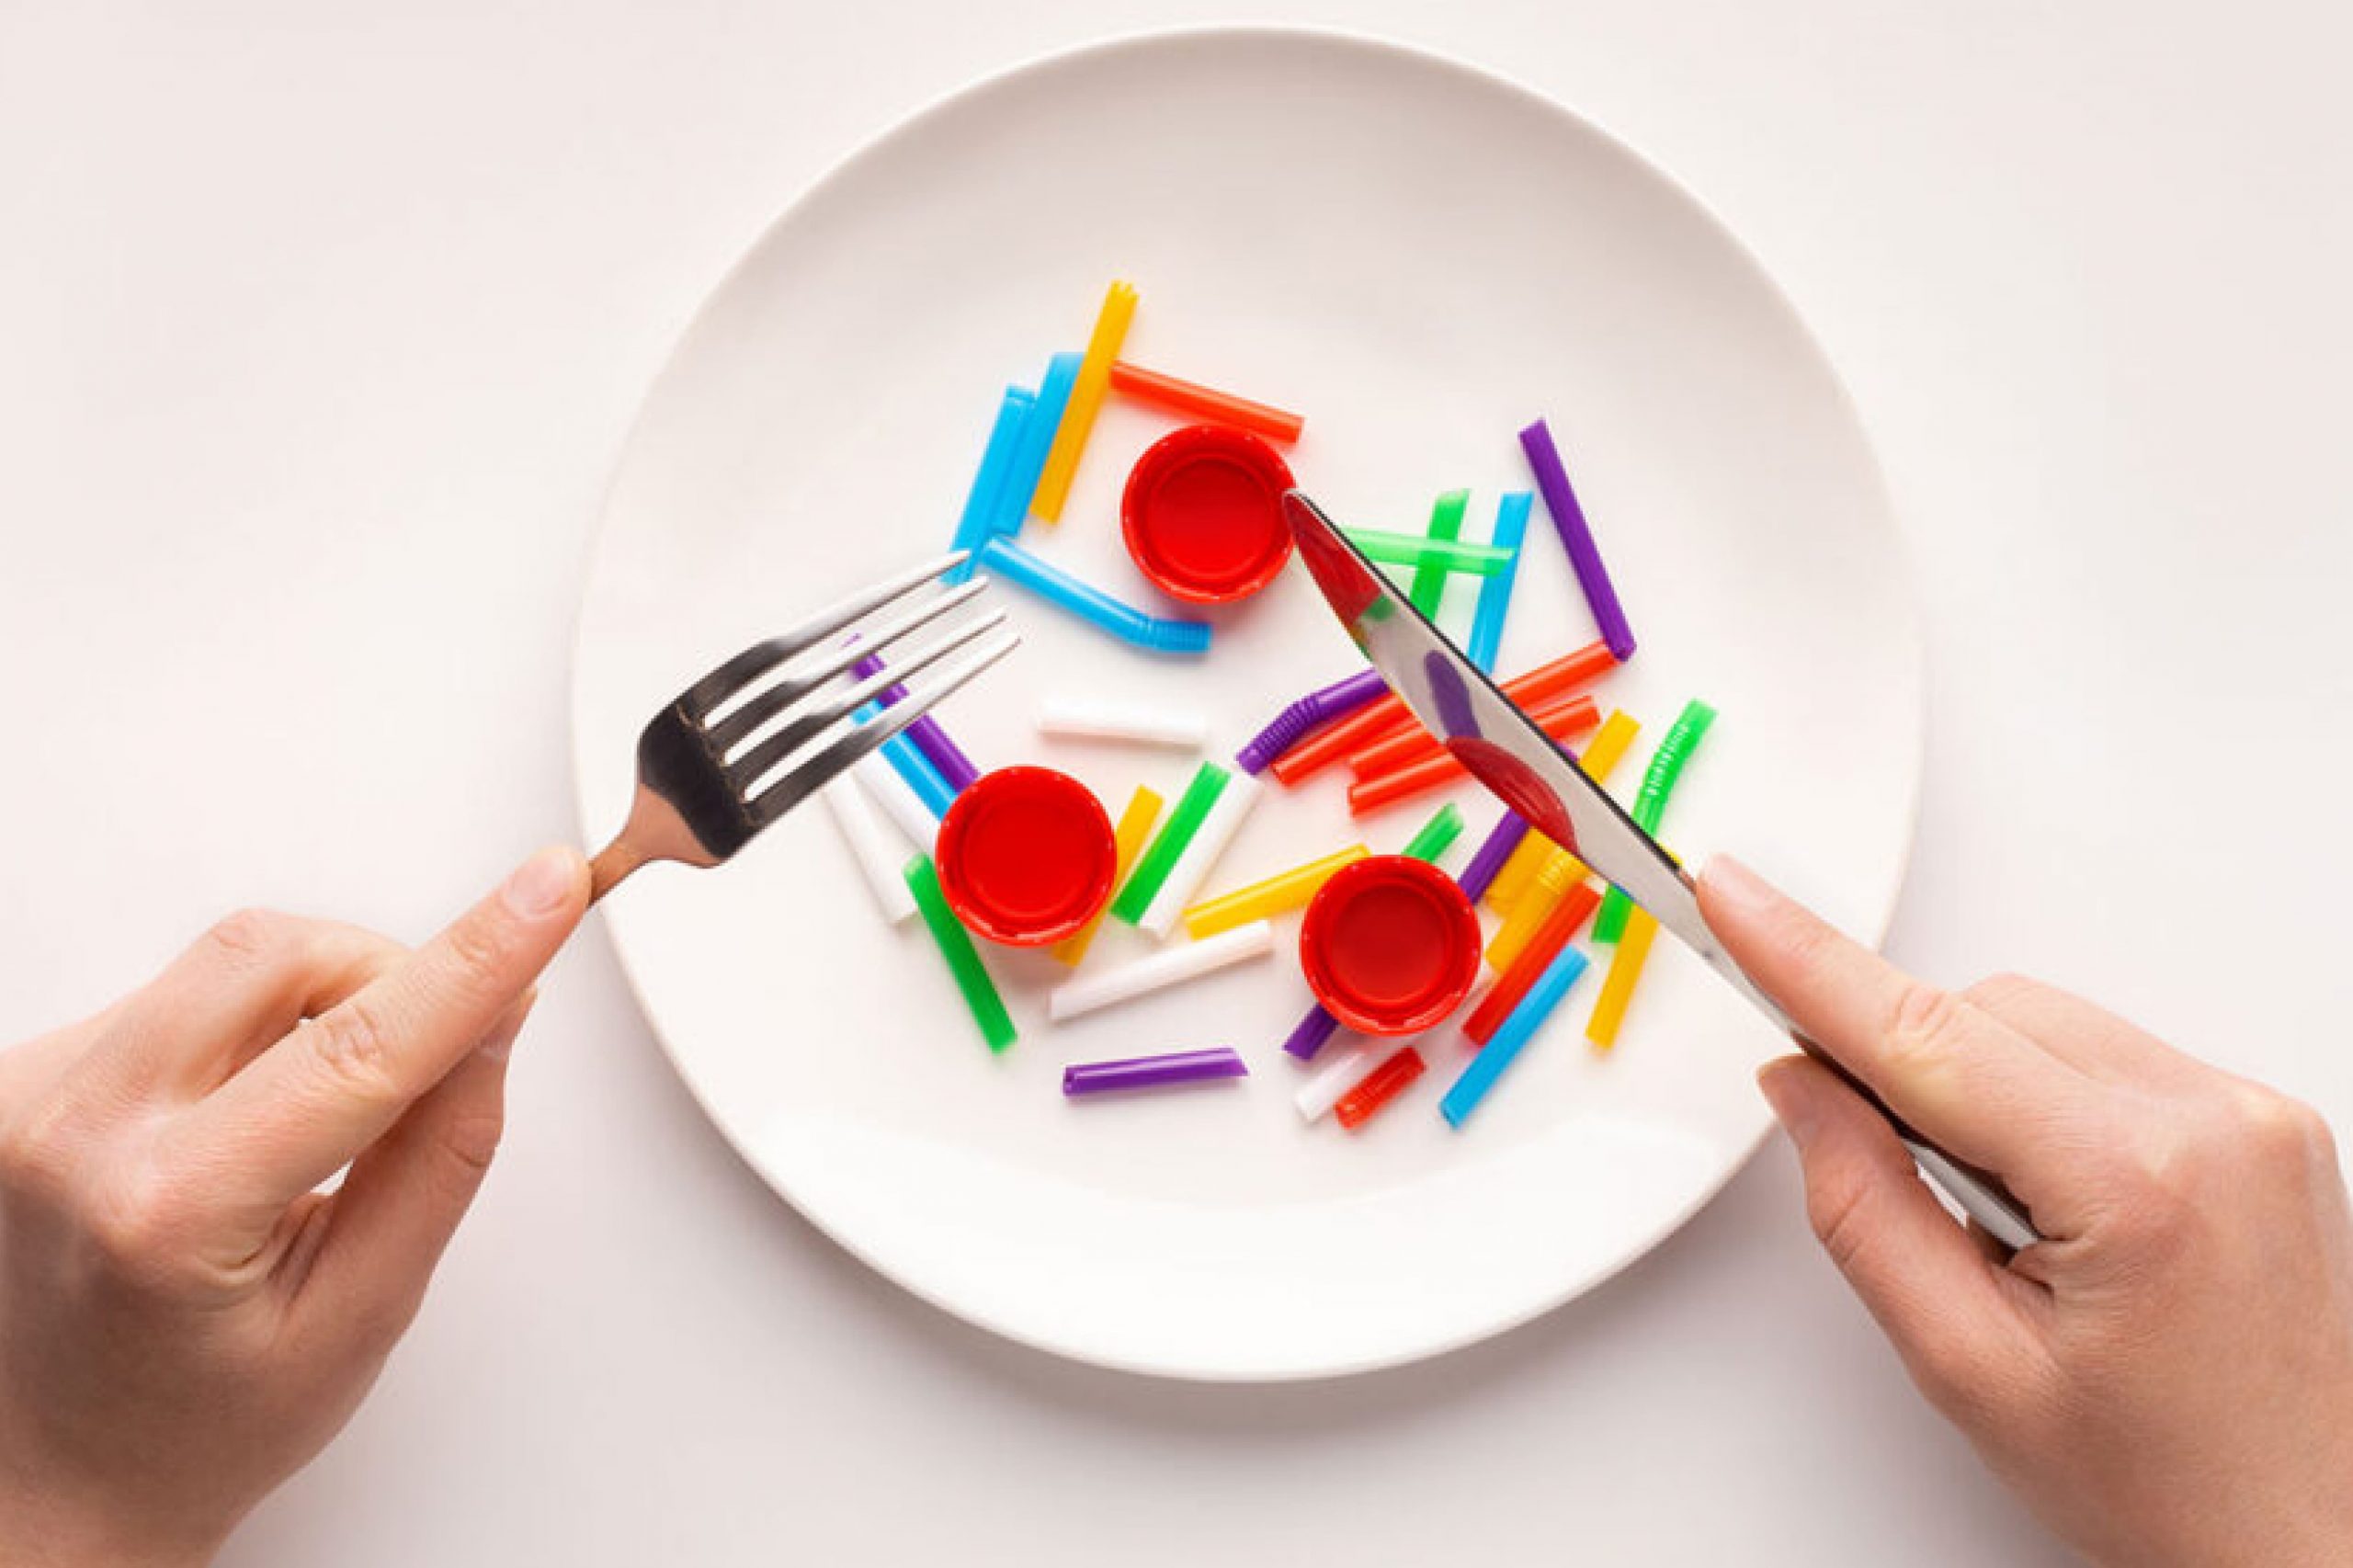  အစားအစာထဲက ပလတ်စတစ်- မင်းမသိဘဲ စားသုံးနေတာ။ ယခုရှာဖွေပါ။